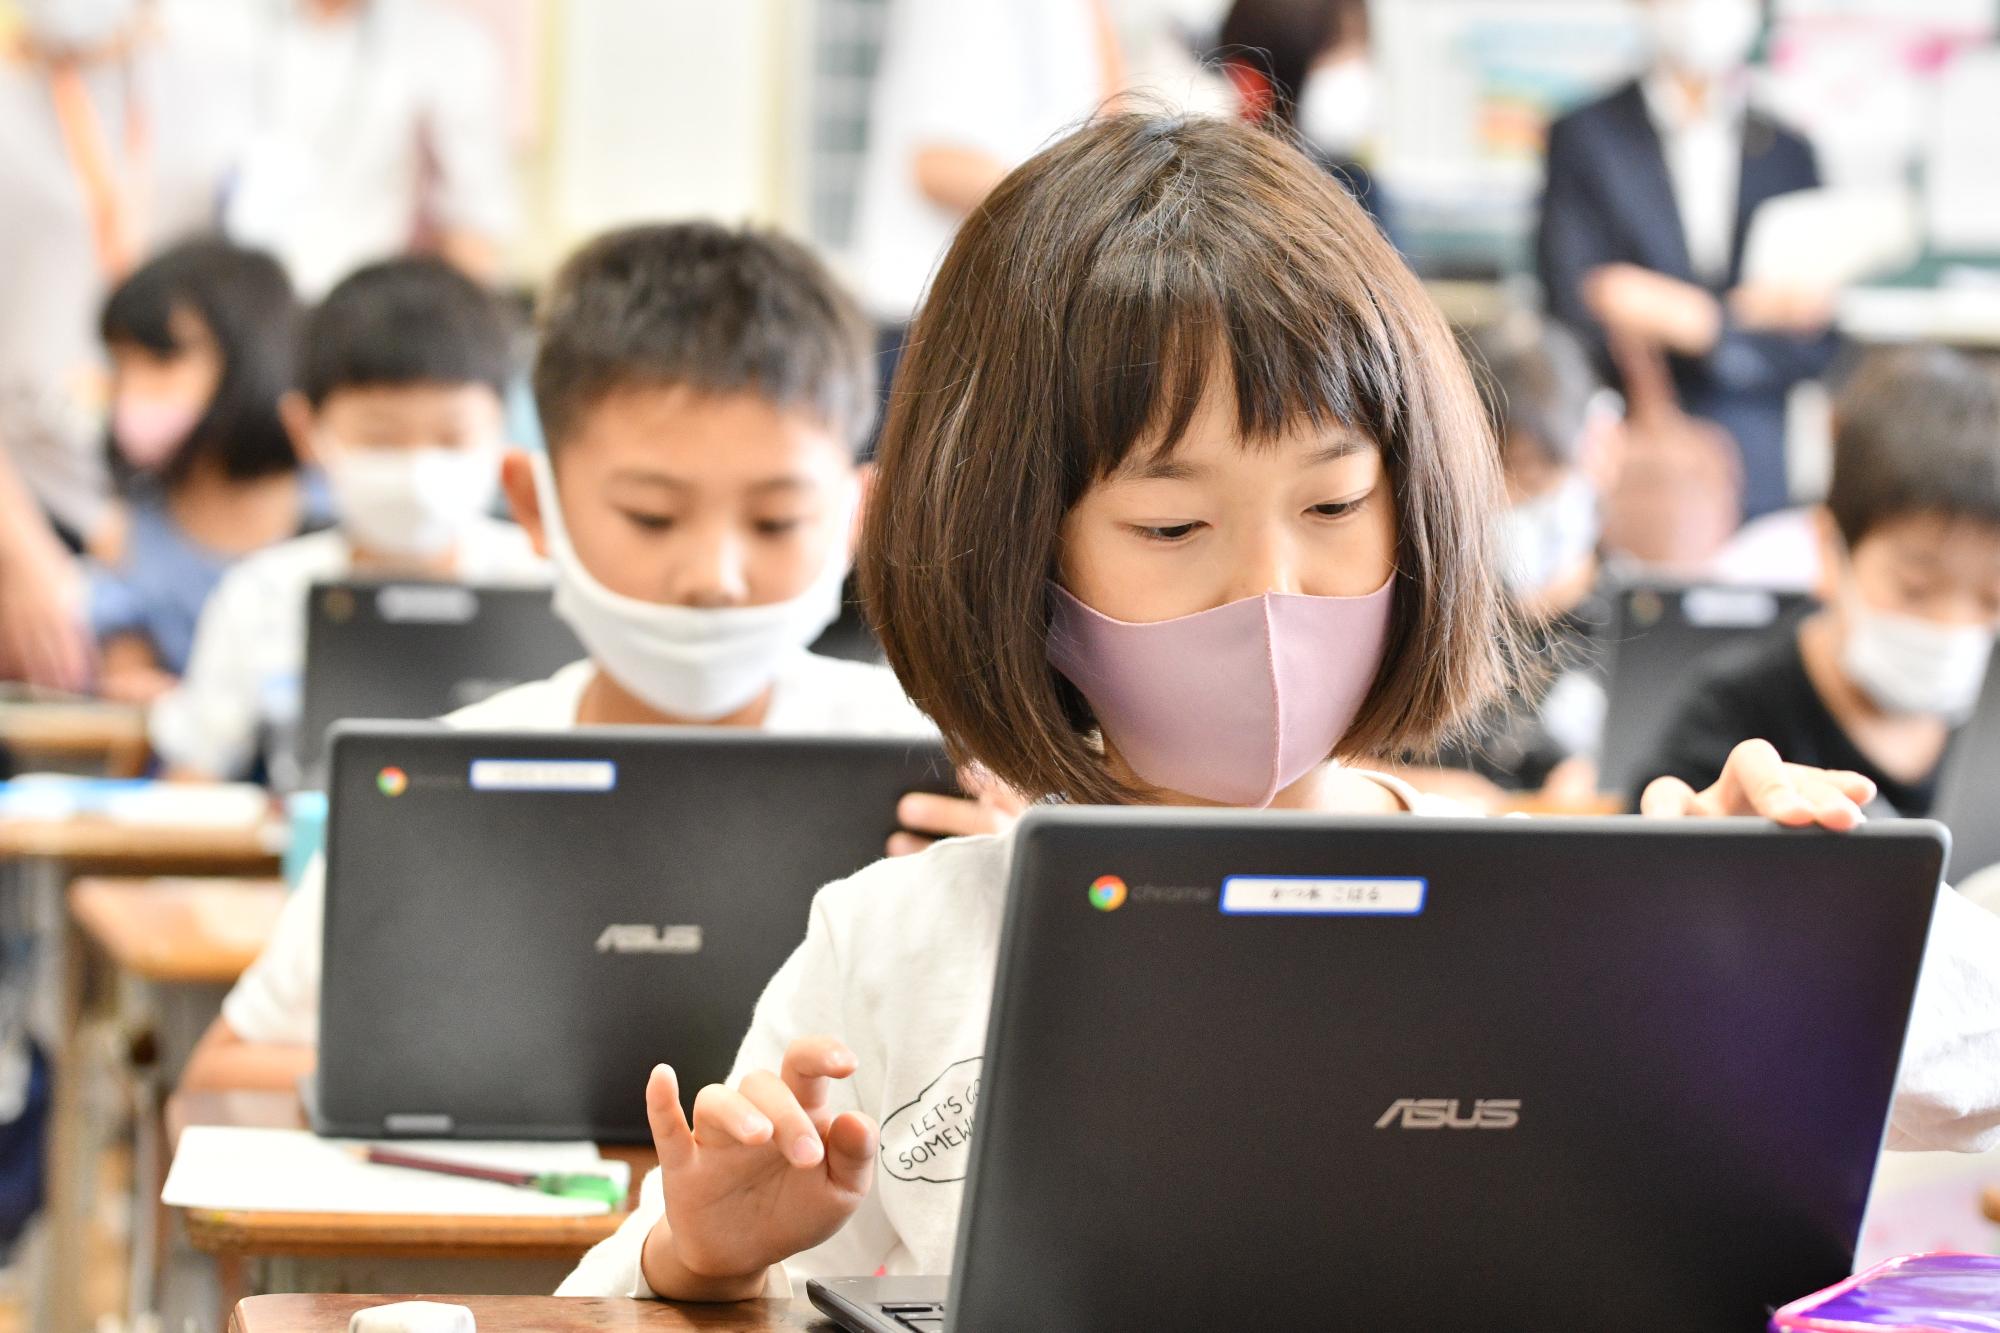 児童一人ひとりにパソコンが配布され、そのパソコンを使用しながら授業を受けている児童の様子